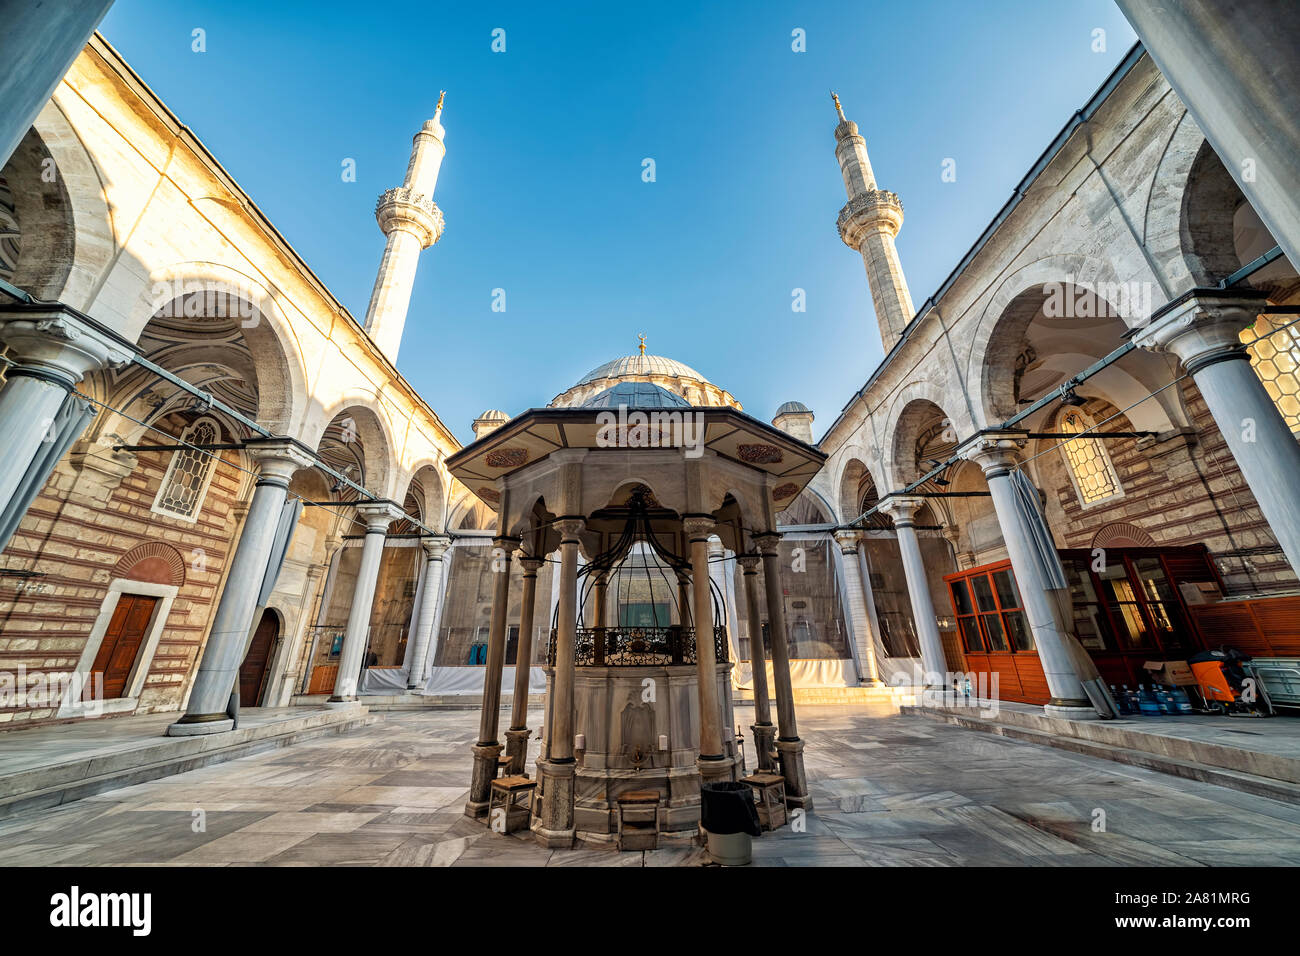 ISTANBUL, Turchia, 5 novembre 2019: angolo ampio cortile dettagli dalla moschea Laleli, una settecentesca Ottoman Imperial moschea si trova in Laleli,Istanbul. Foto Stock